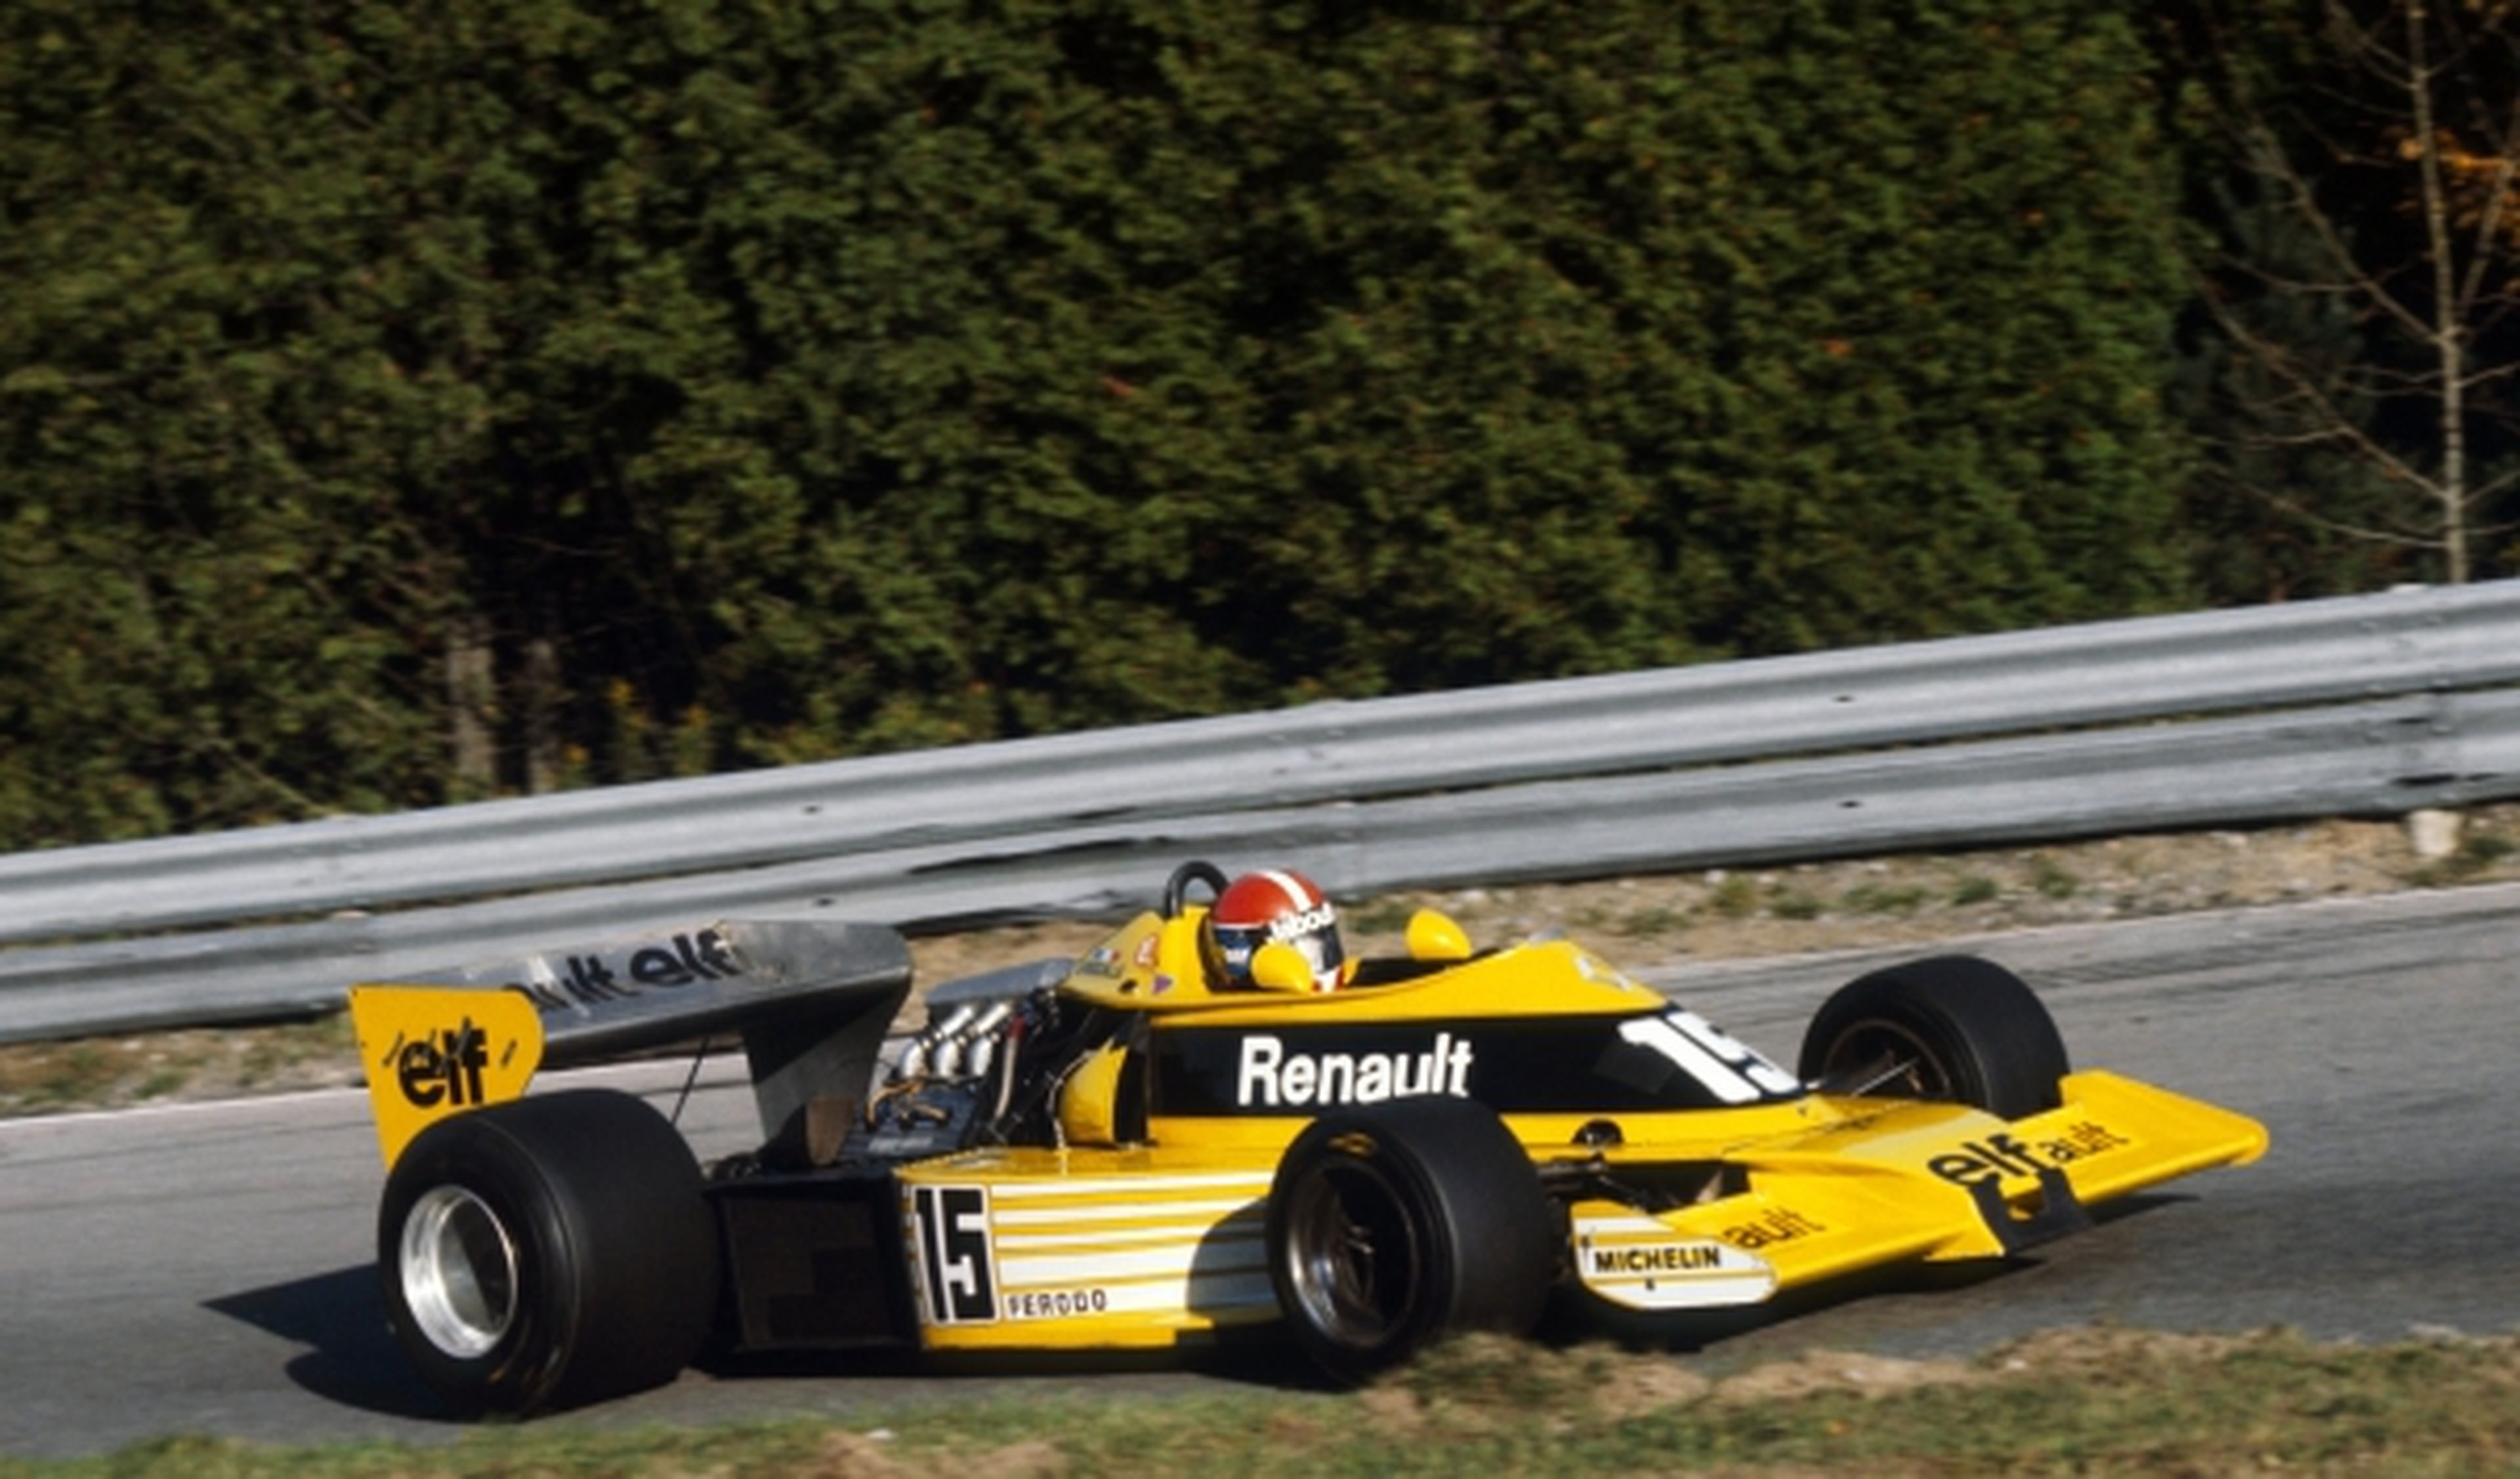 Renault debutó en la F1 en 1977